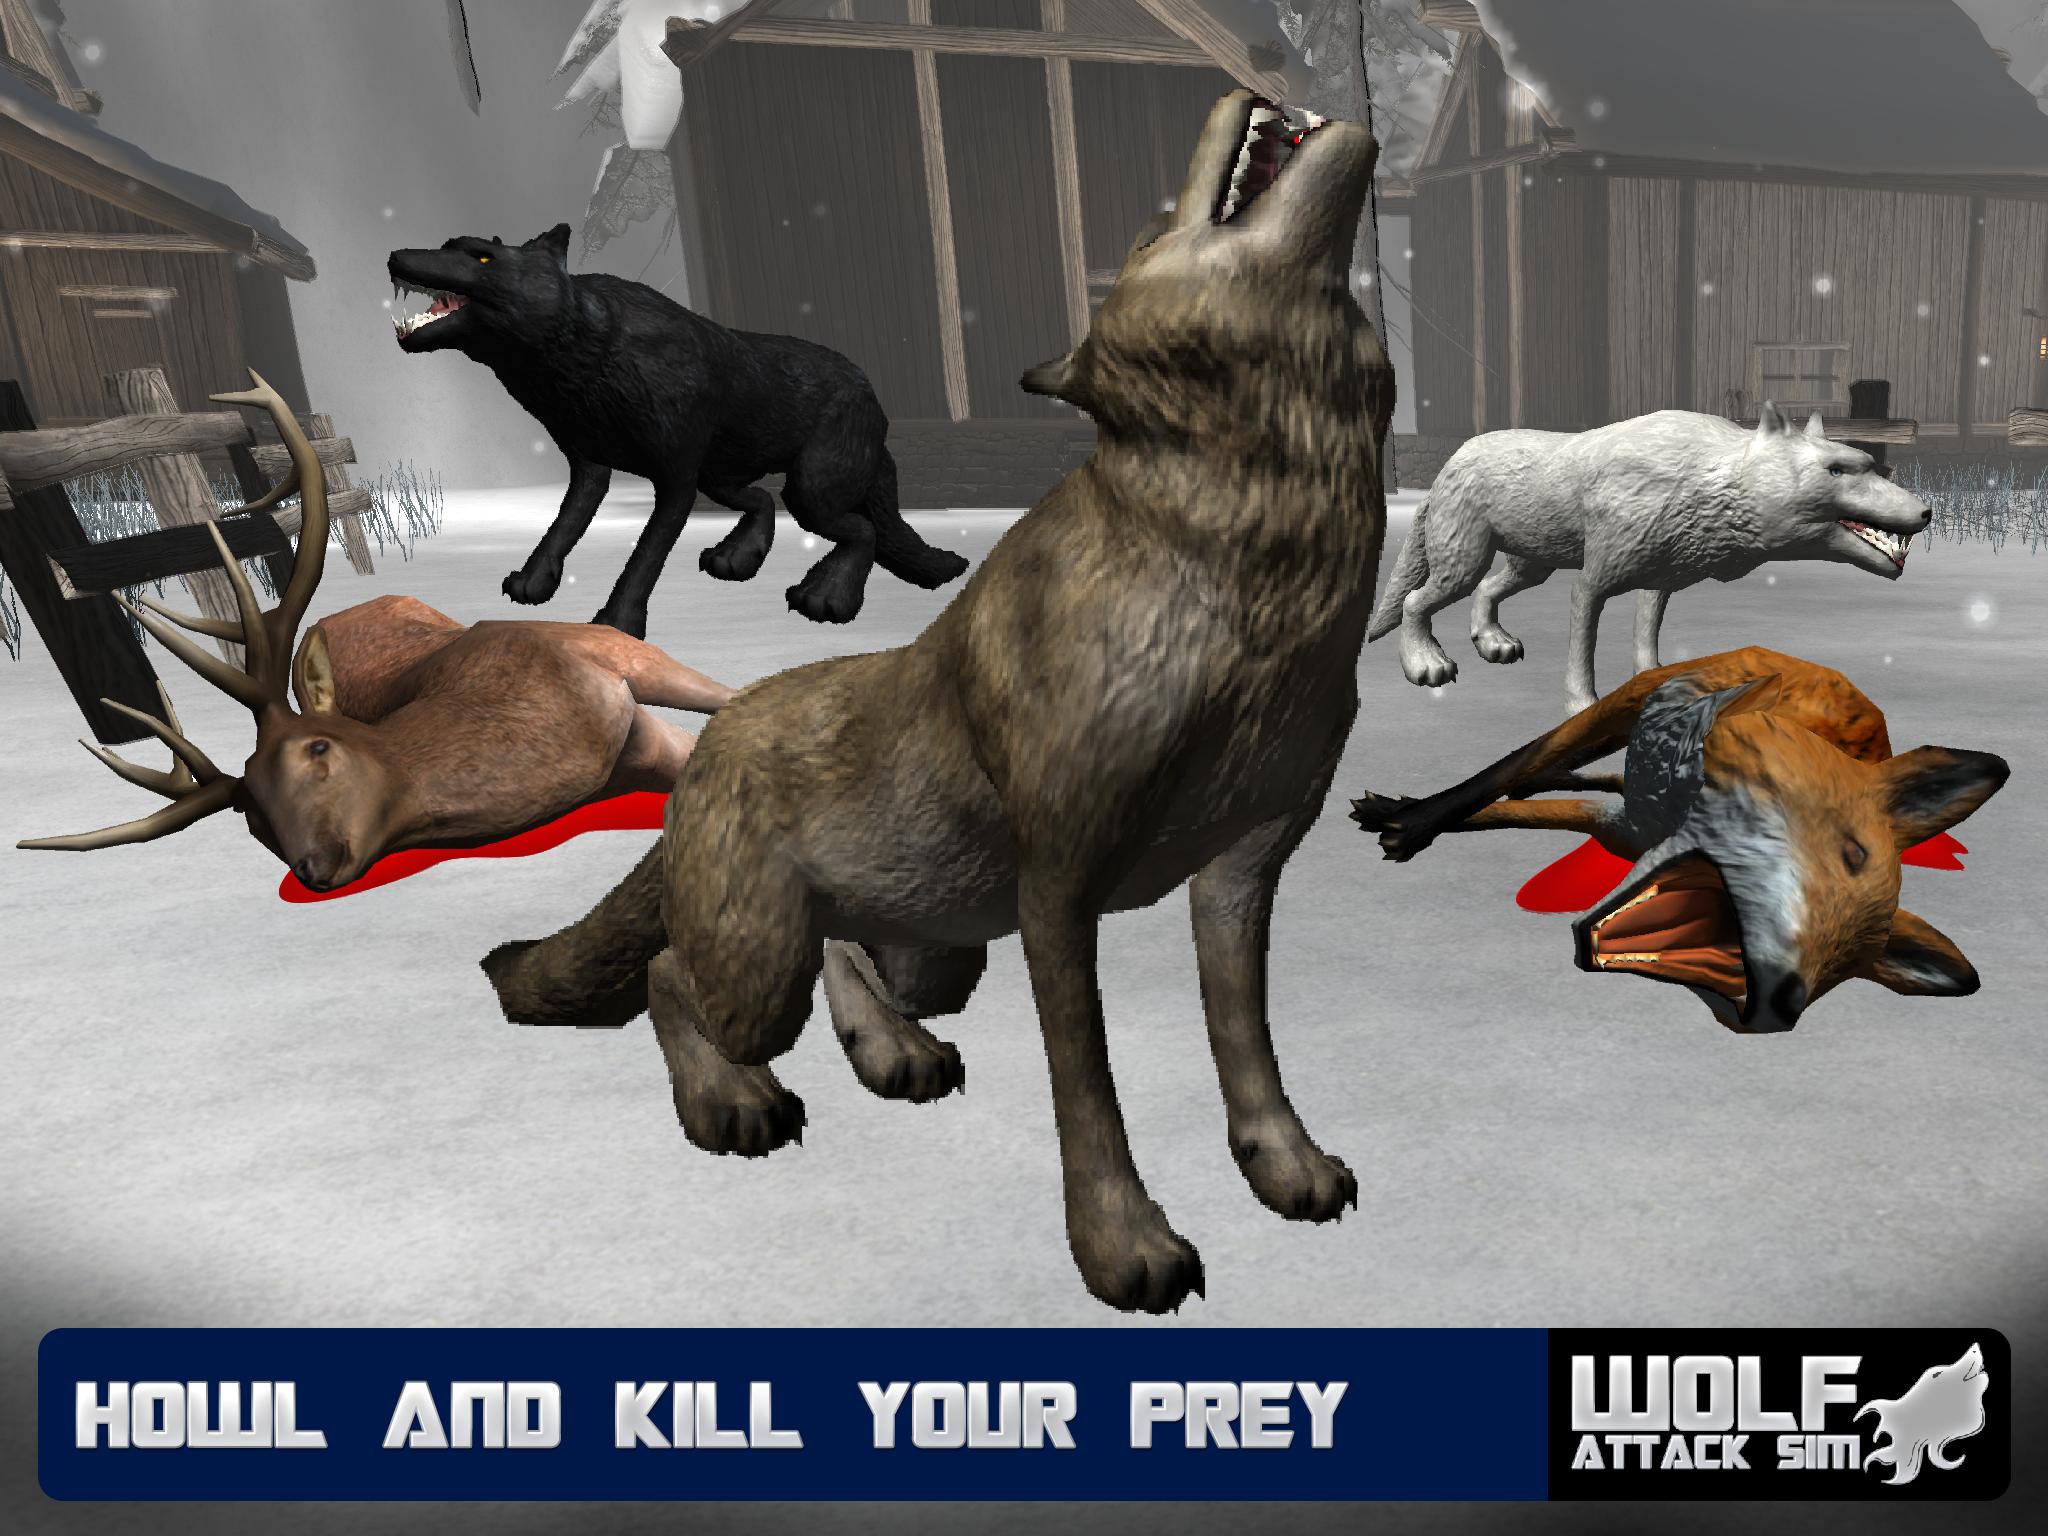 Игры 1 волк. The Wolf игра. The Wolf симулятор волка. Волк из игры. Реалистичные игры про Волков.